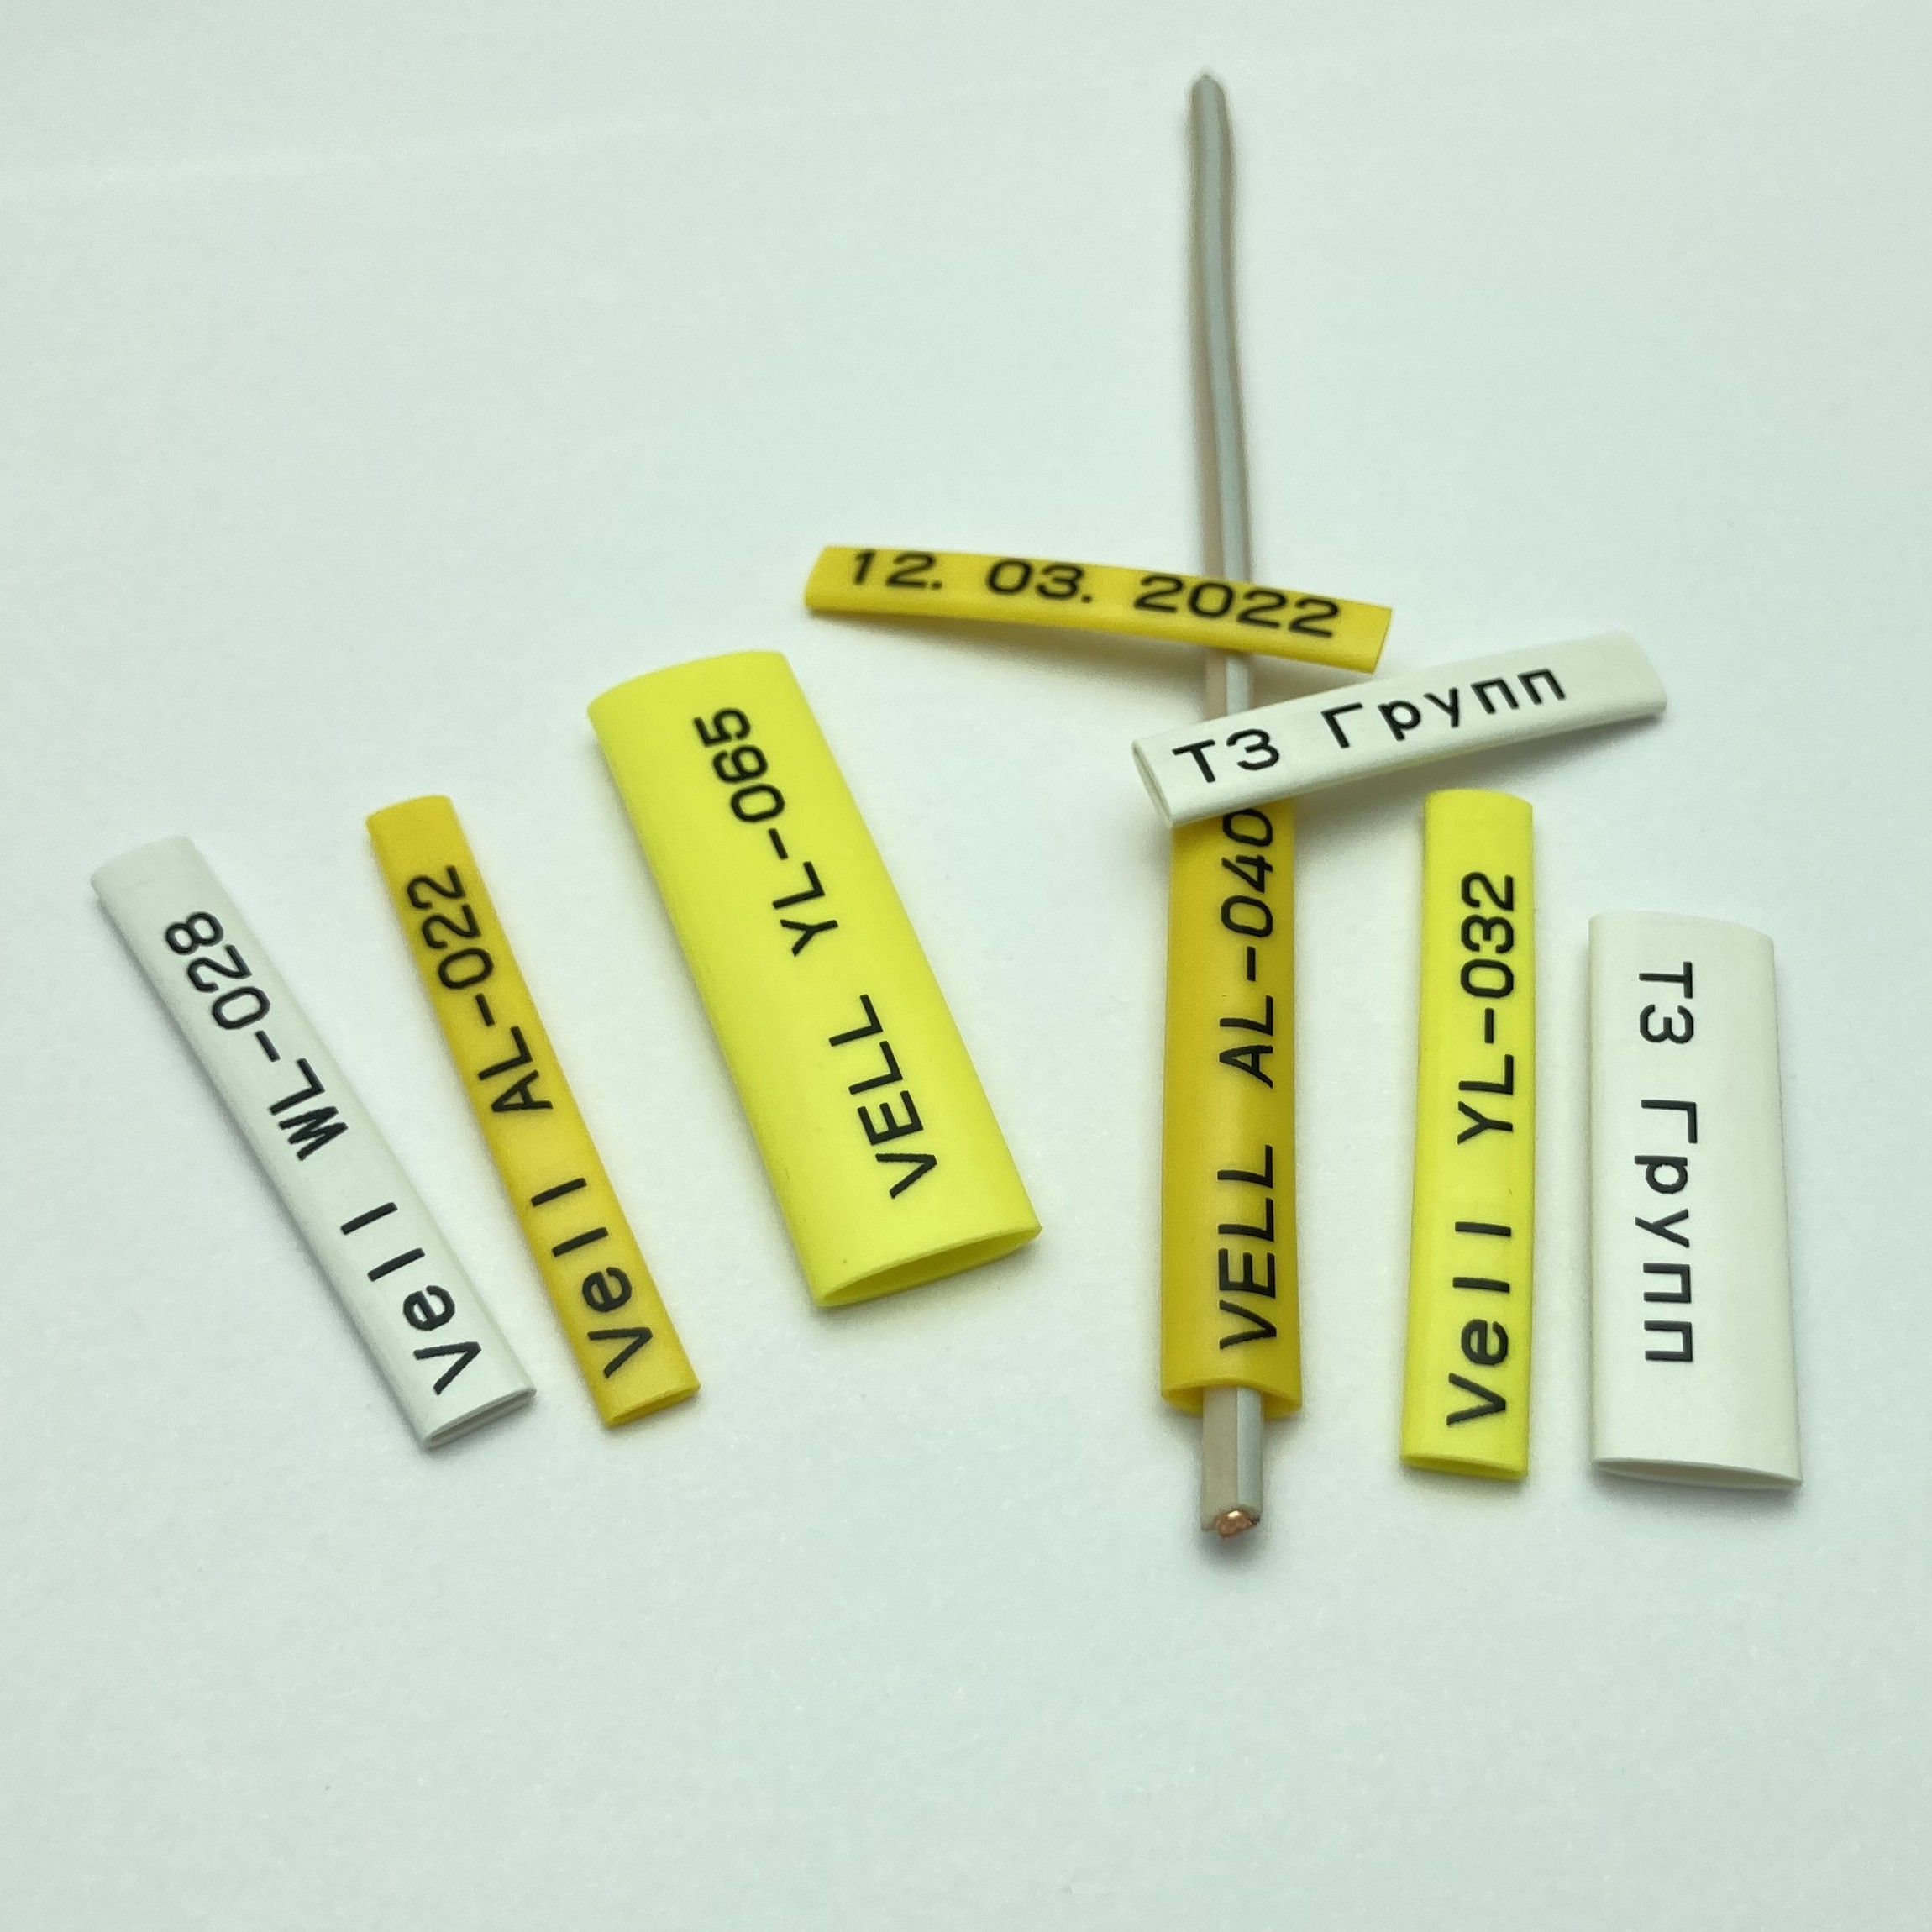 Фото Профиль ПВХ овальный Vell YL-032 для маркировки проводов, Ø 3,2 мм, 200 метров, желтый, аналог Partex PO-05 (самозатухающий) {378020} (4)